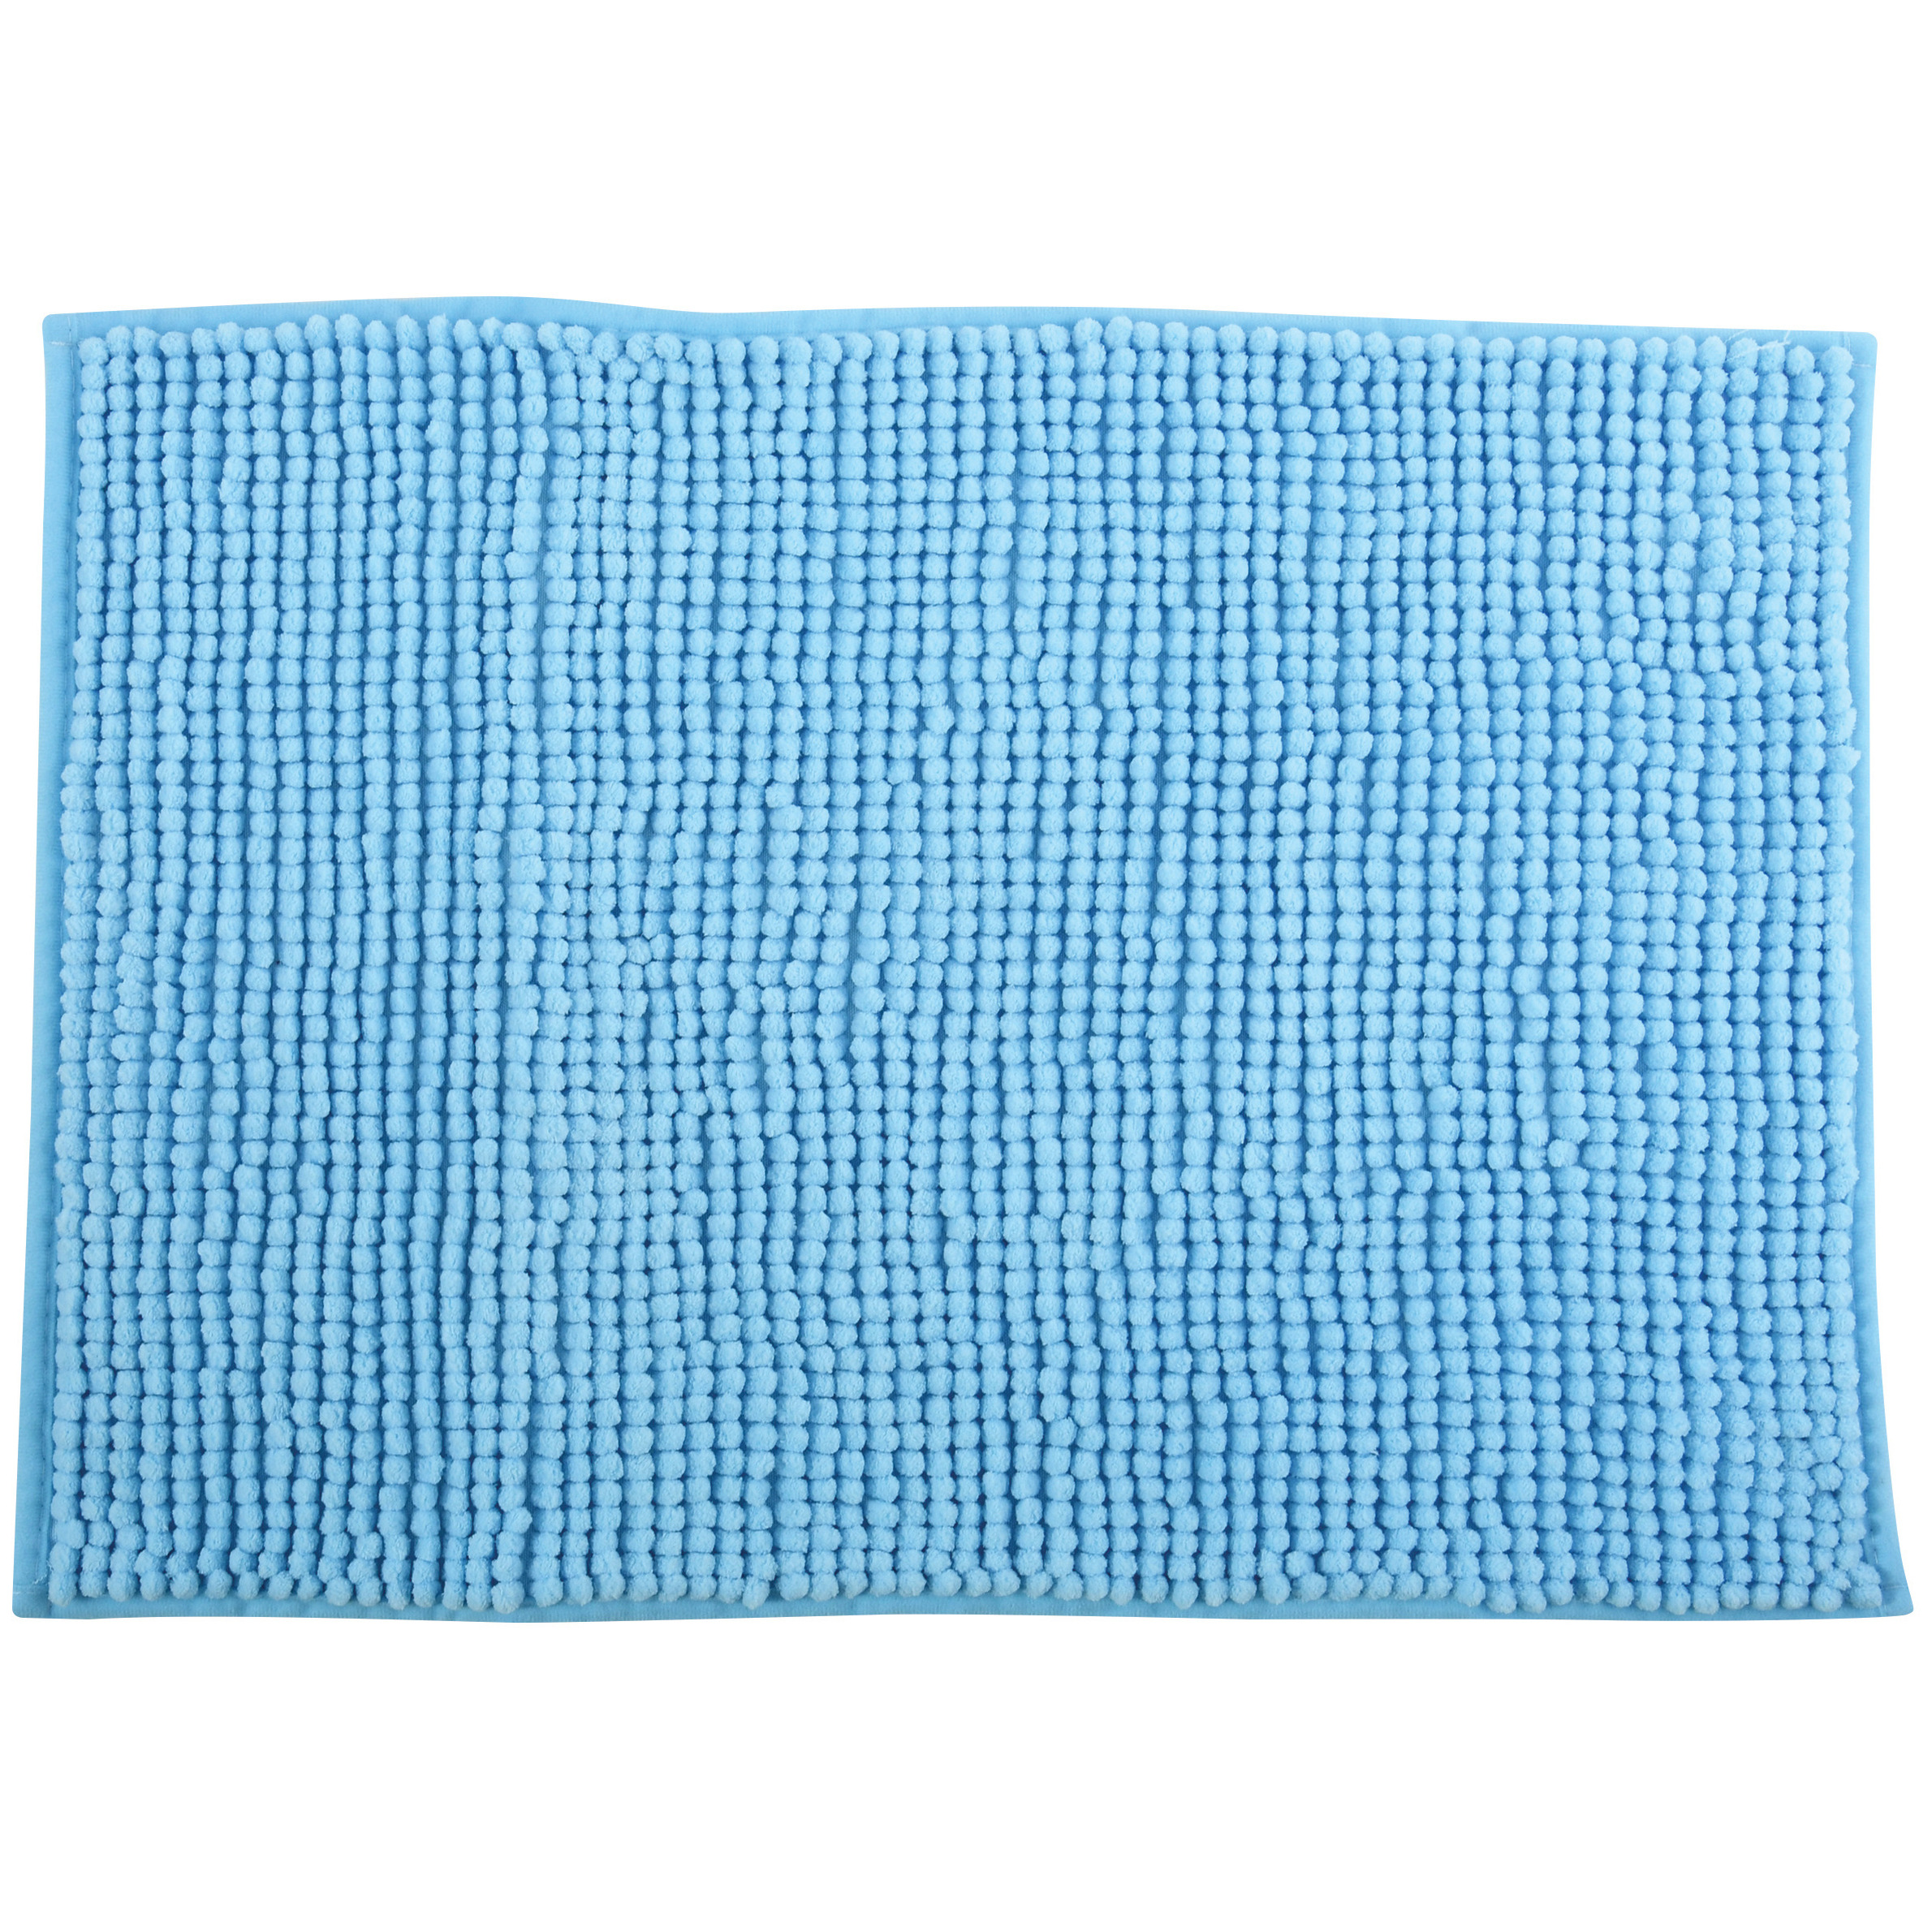 Badkamerkleedje-badmat tapijt voor op de vloer lichtblauw 60 x 90 cm